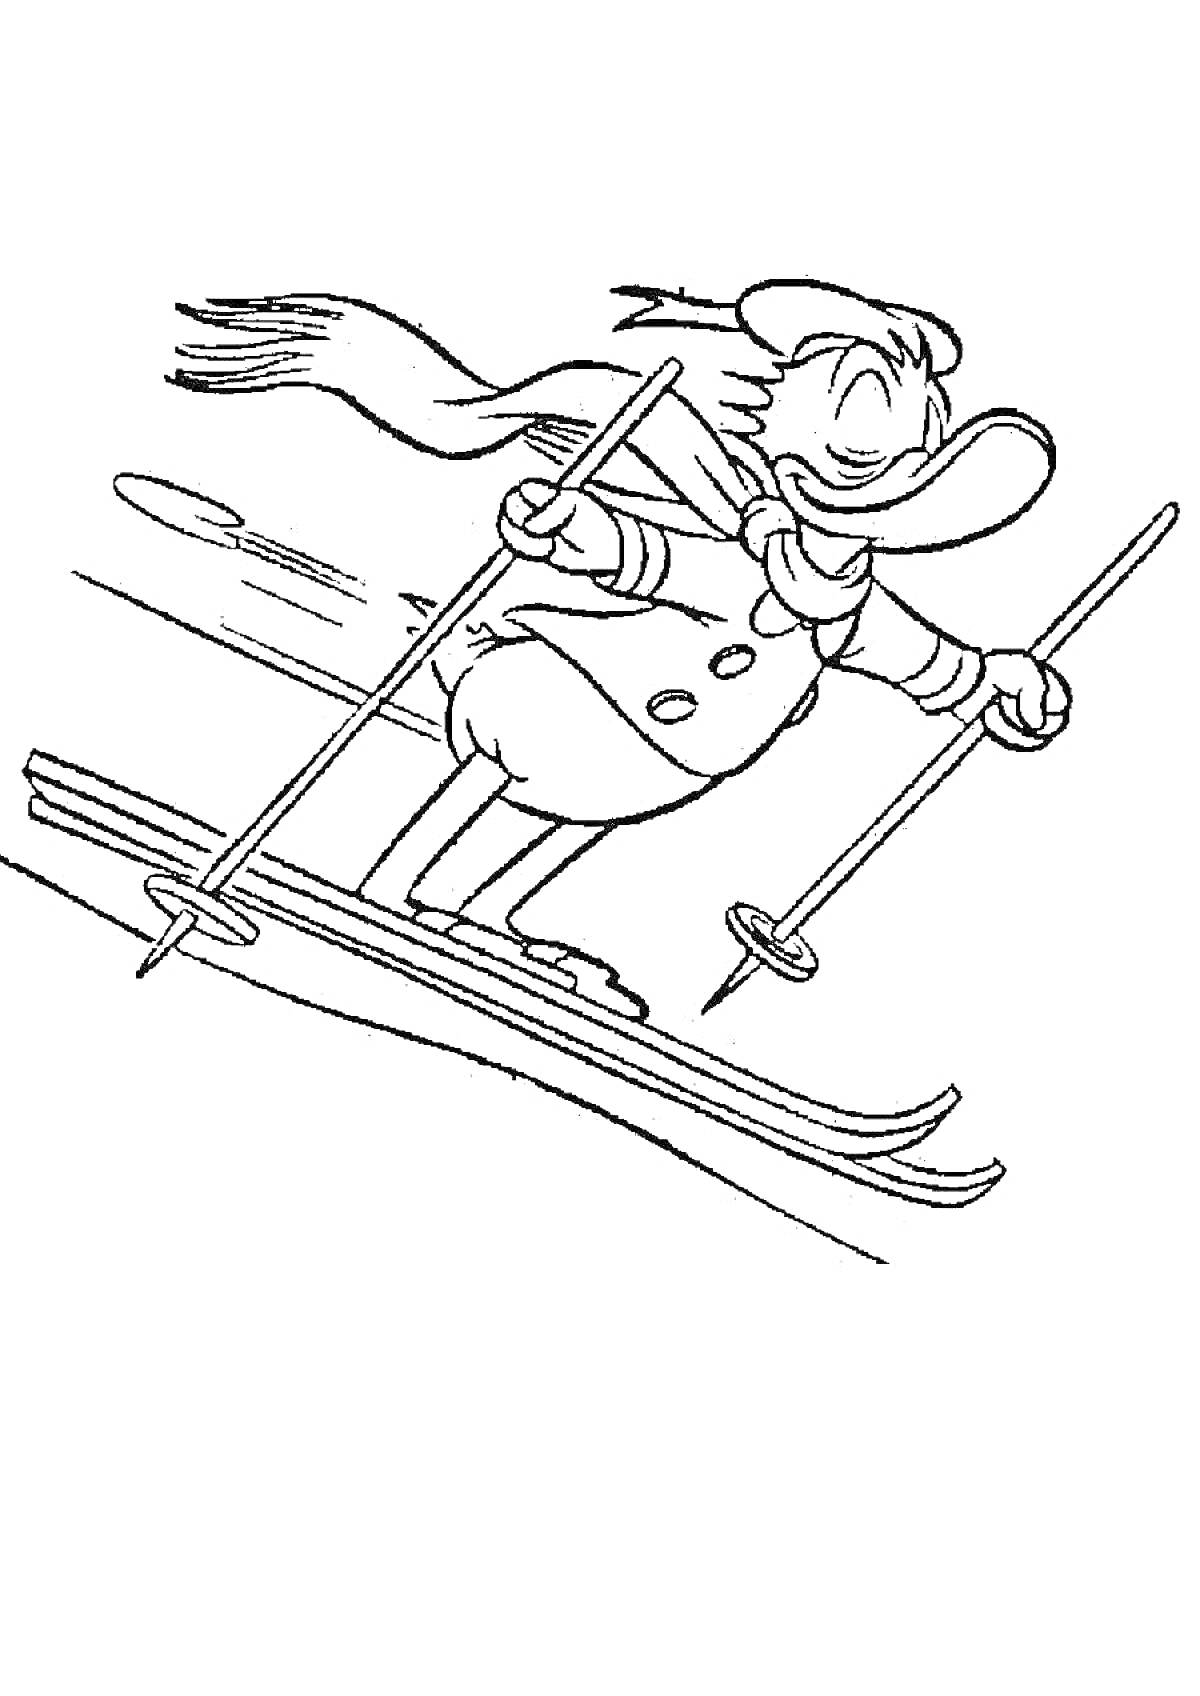 Раскраска Утка на лыжах с палками, наряженная в шарф и длинную куртку